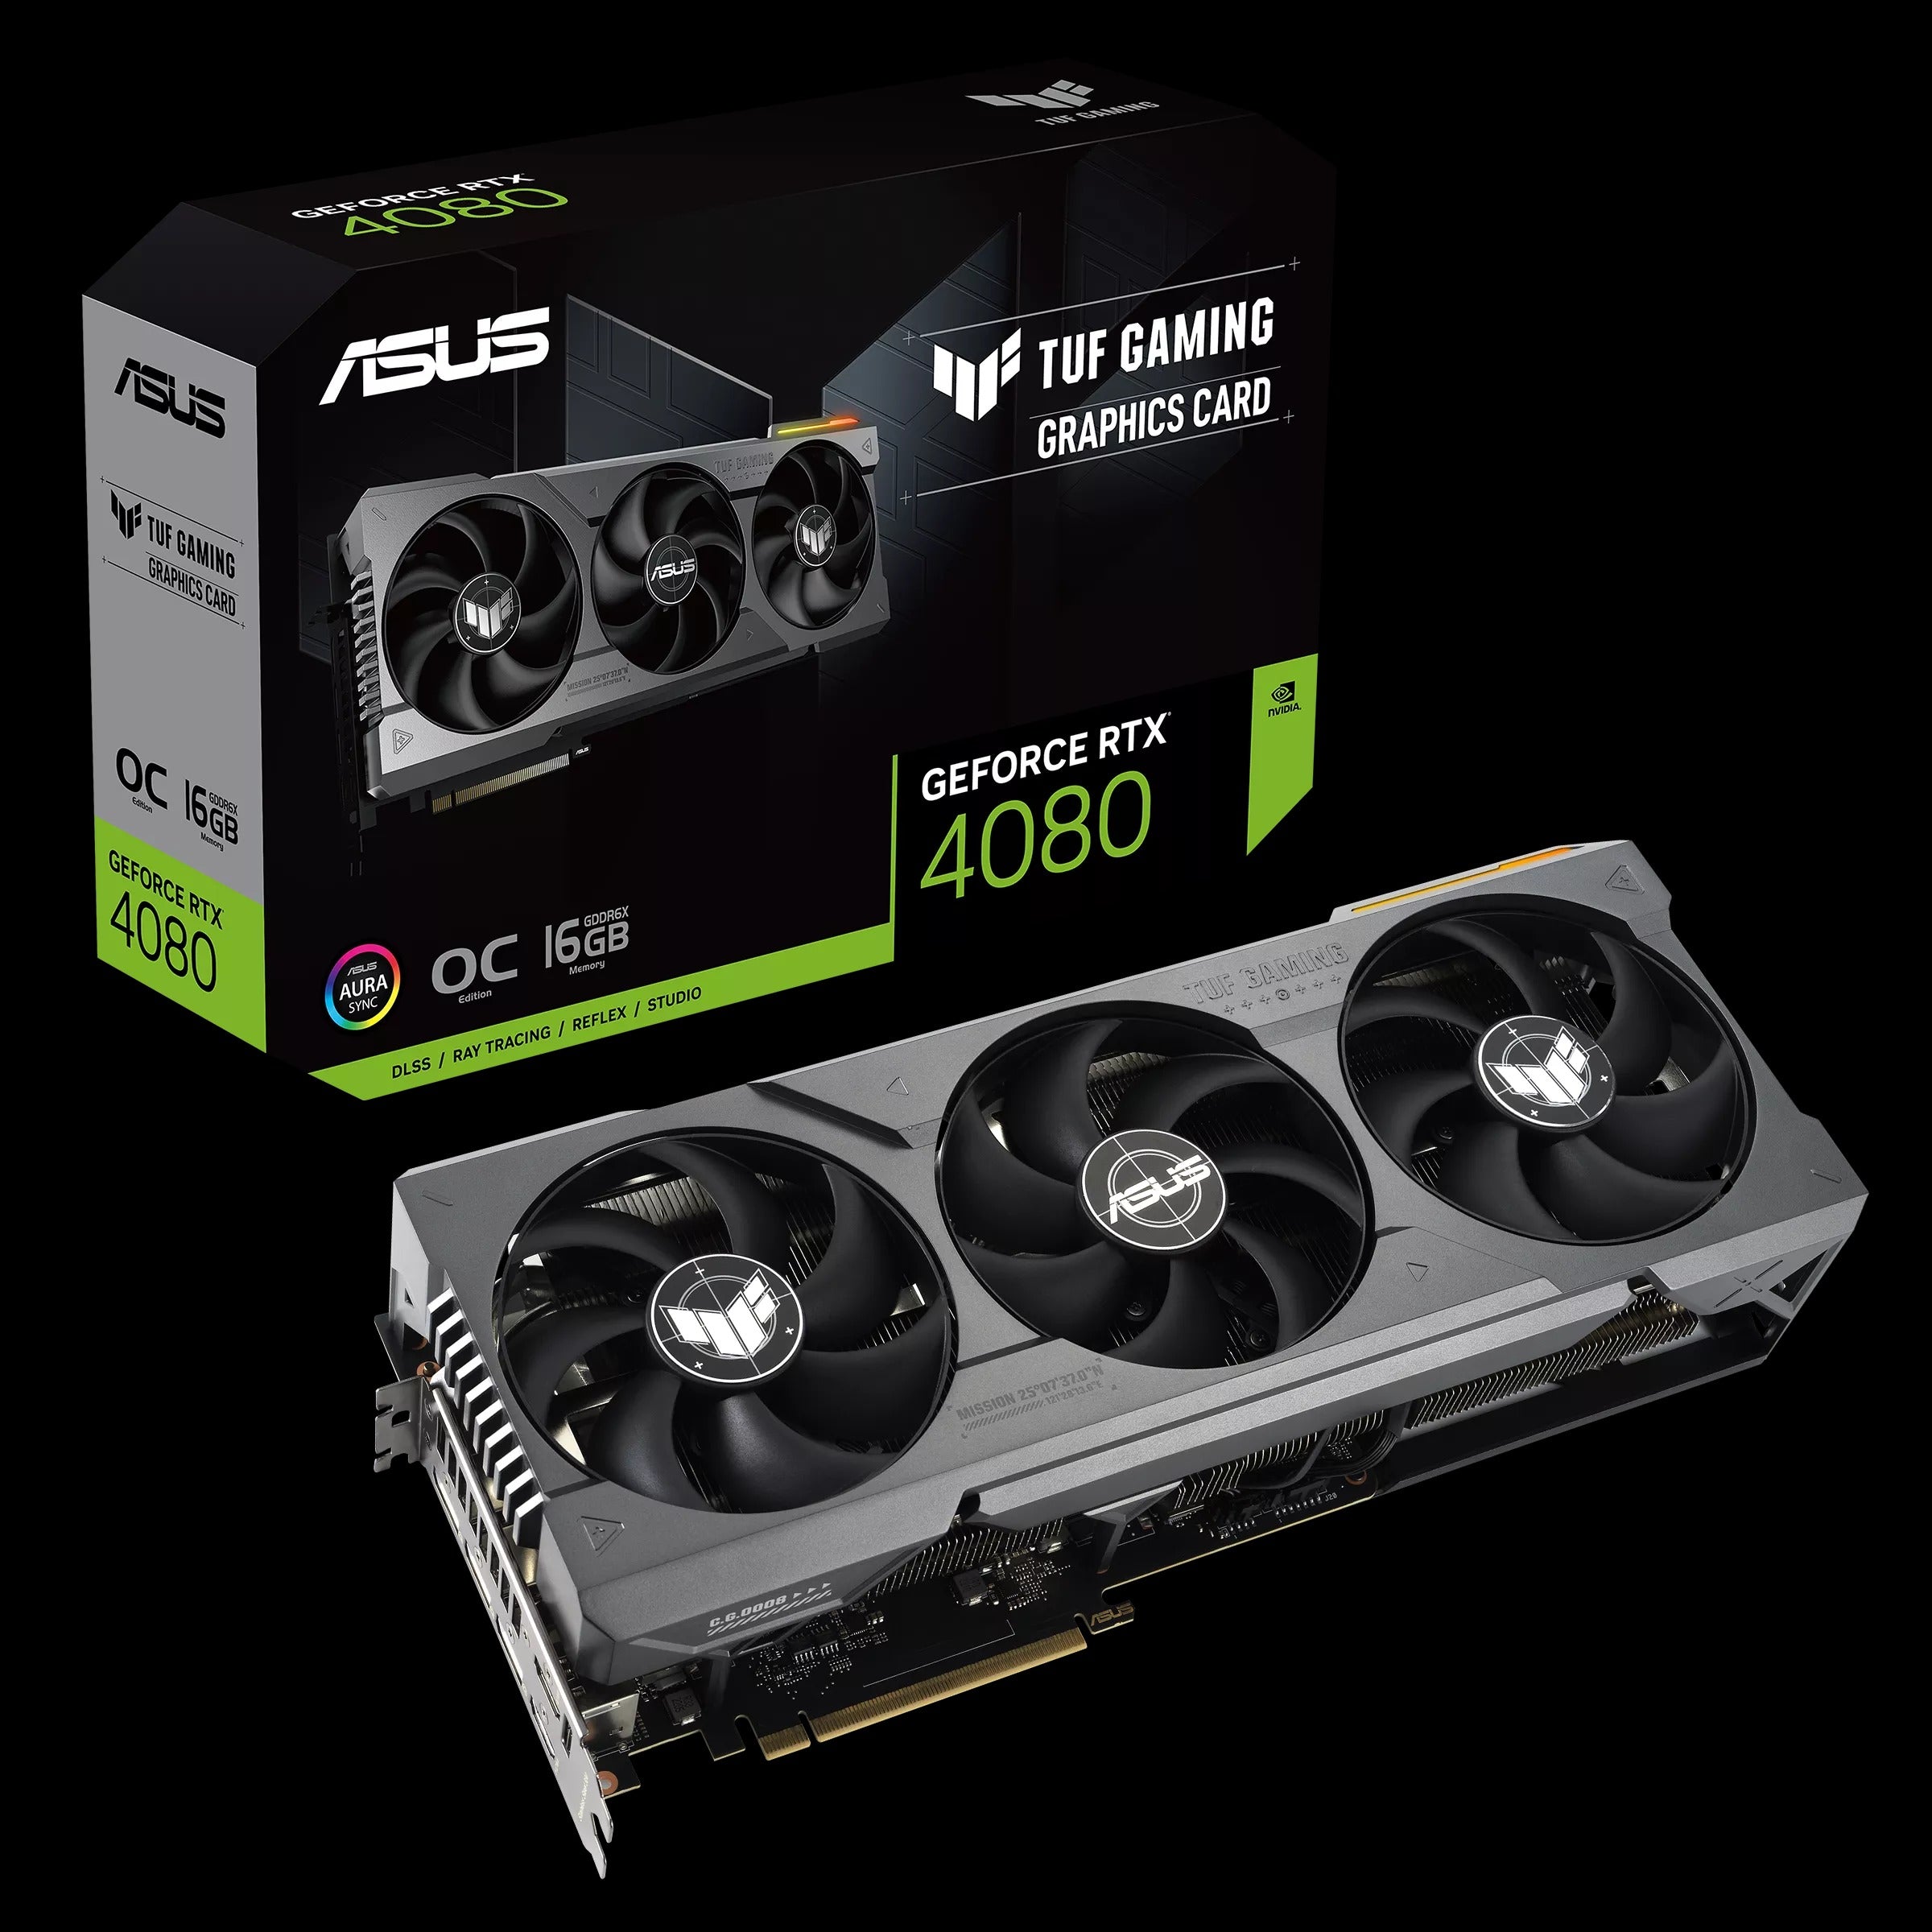 ASUS TUF Gaming GeForce RTX® 4080 16GB GDDR6X